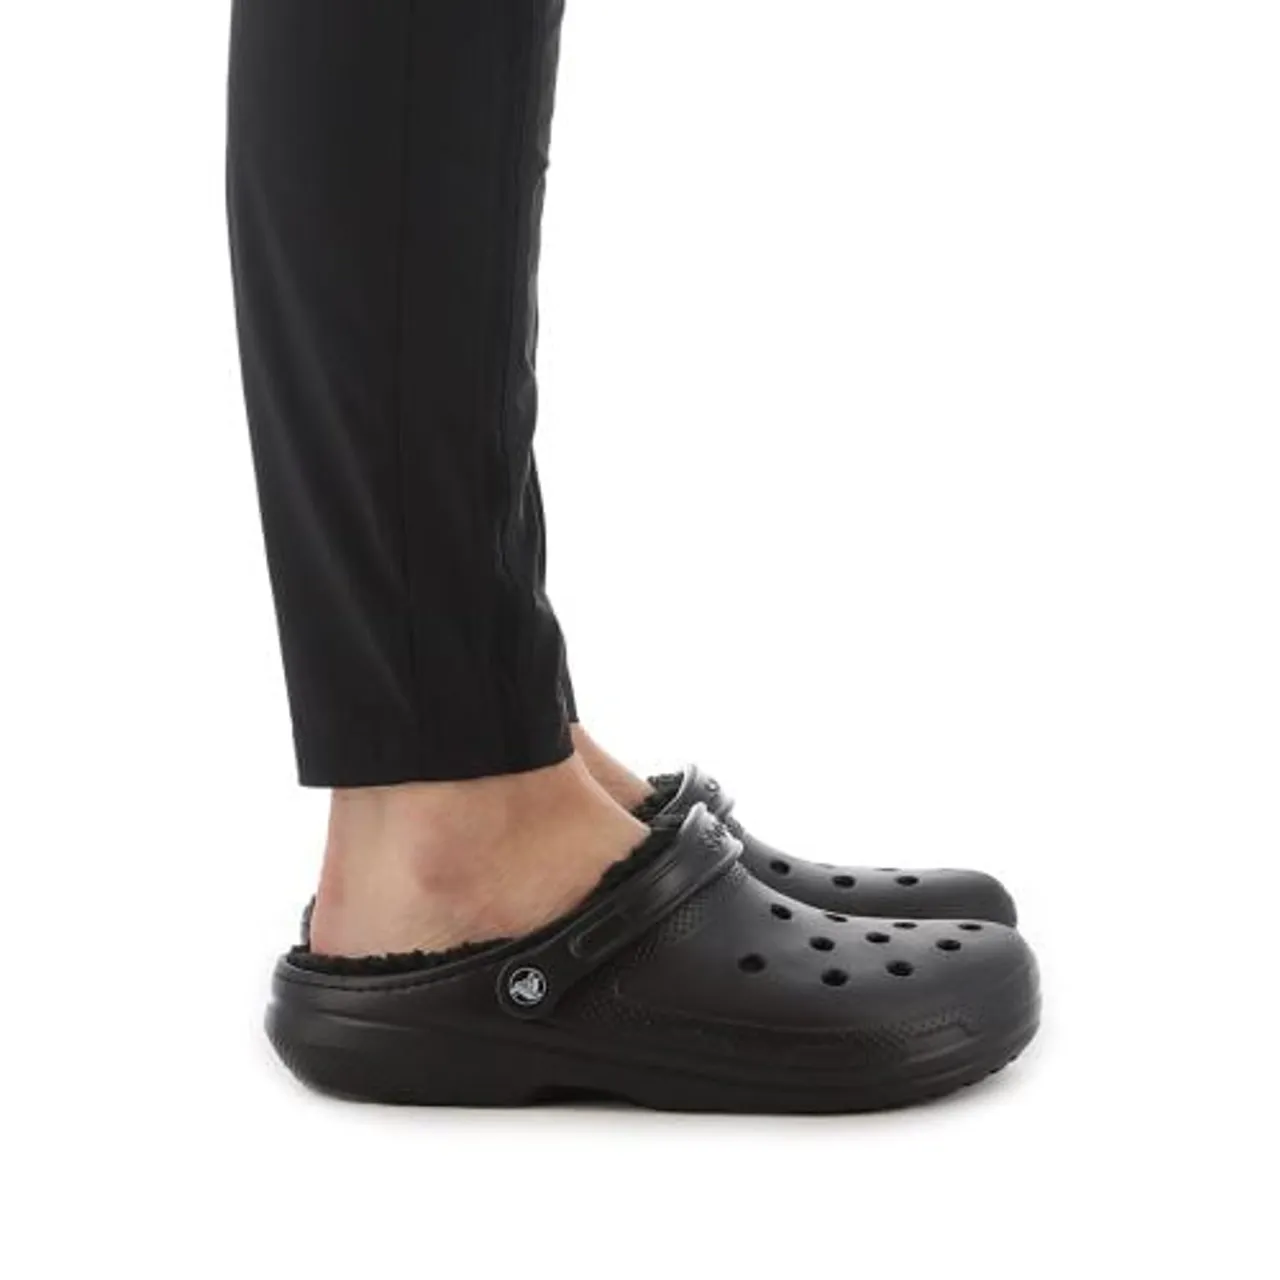 Crocs Womens Black Classic Lined Clog